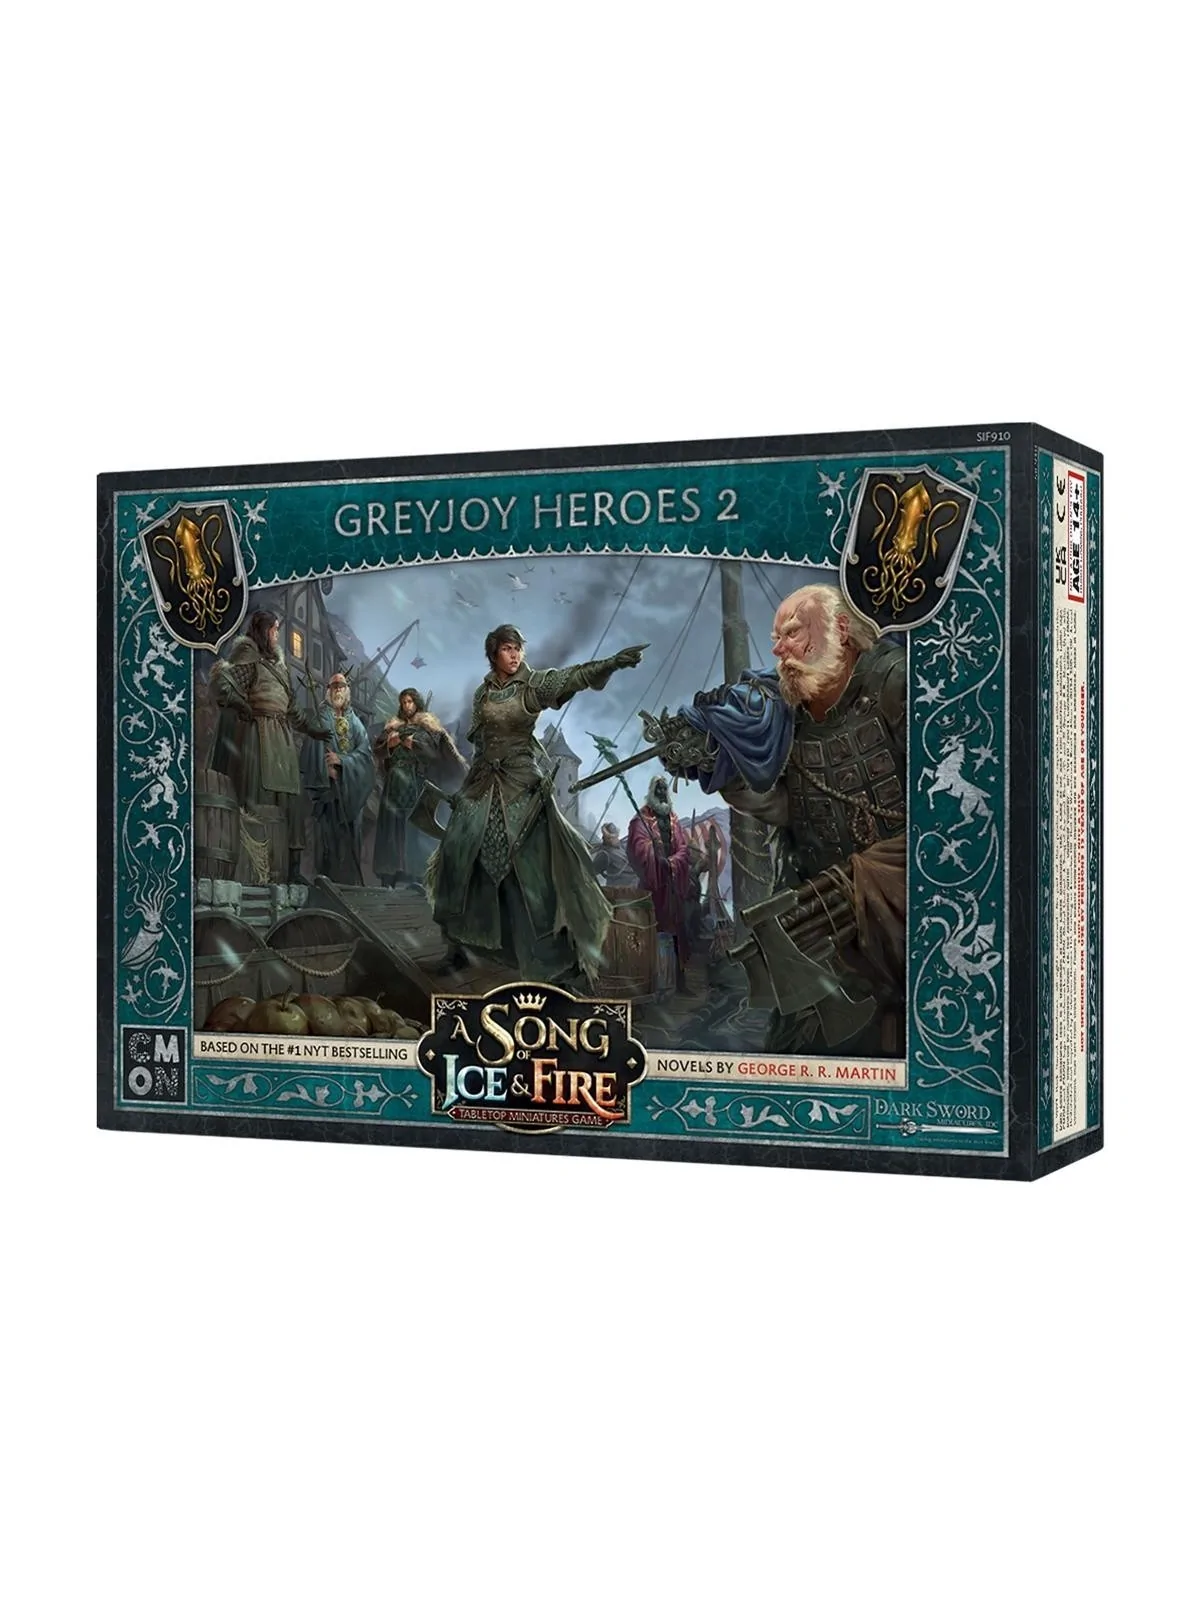 Comprar Canción de Hielo y Fuego: Héroes Greyjoy II barato al mejor pr